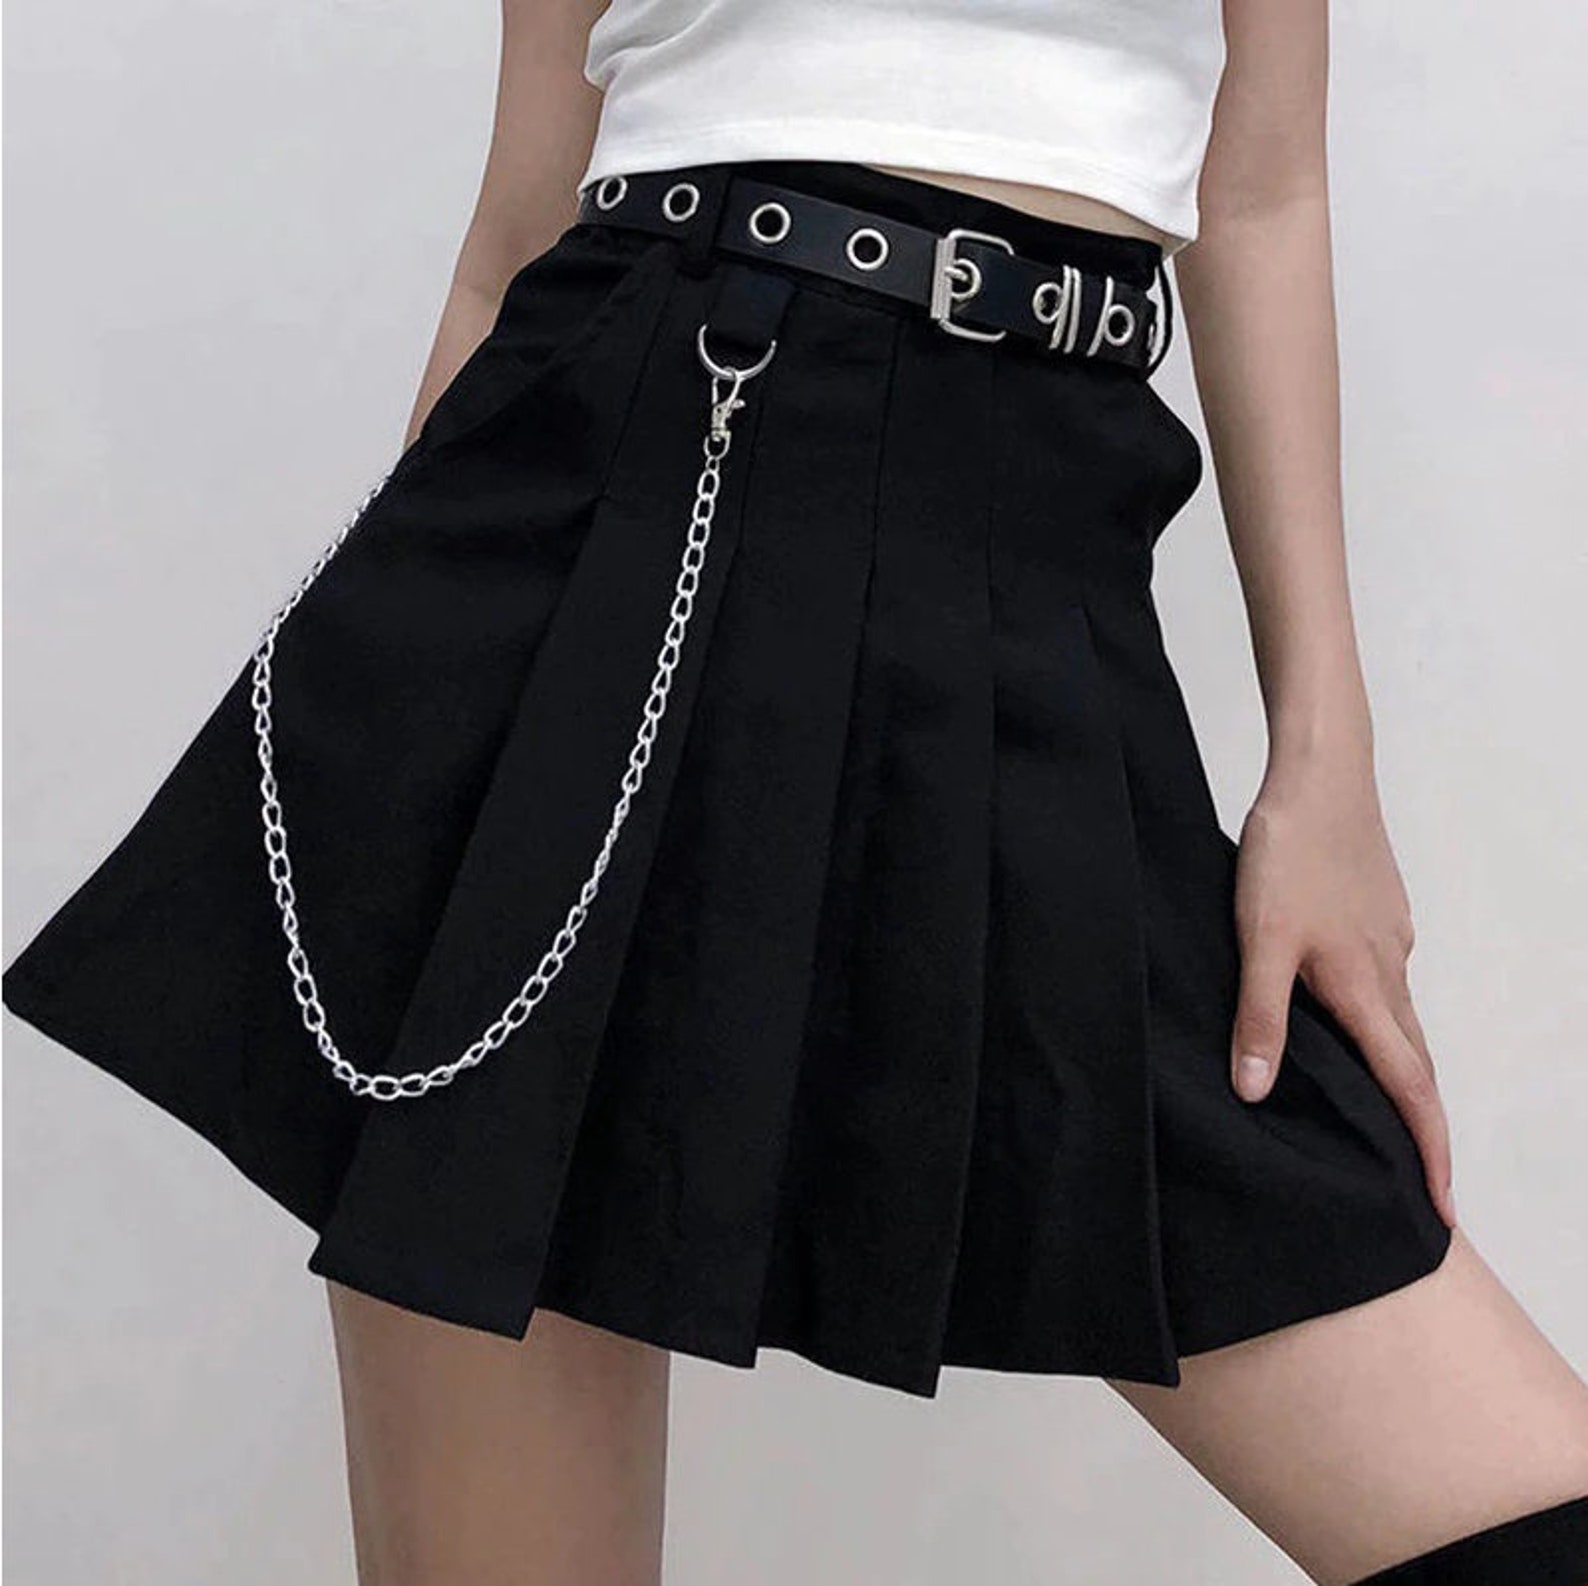 Gothic Plaid Skirt Women Y2k Cyber goth clothing Cyberpunk | Etsy